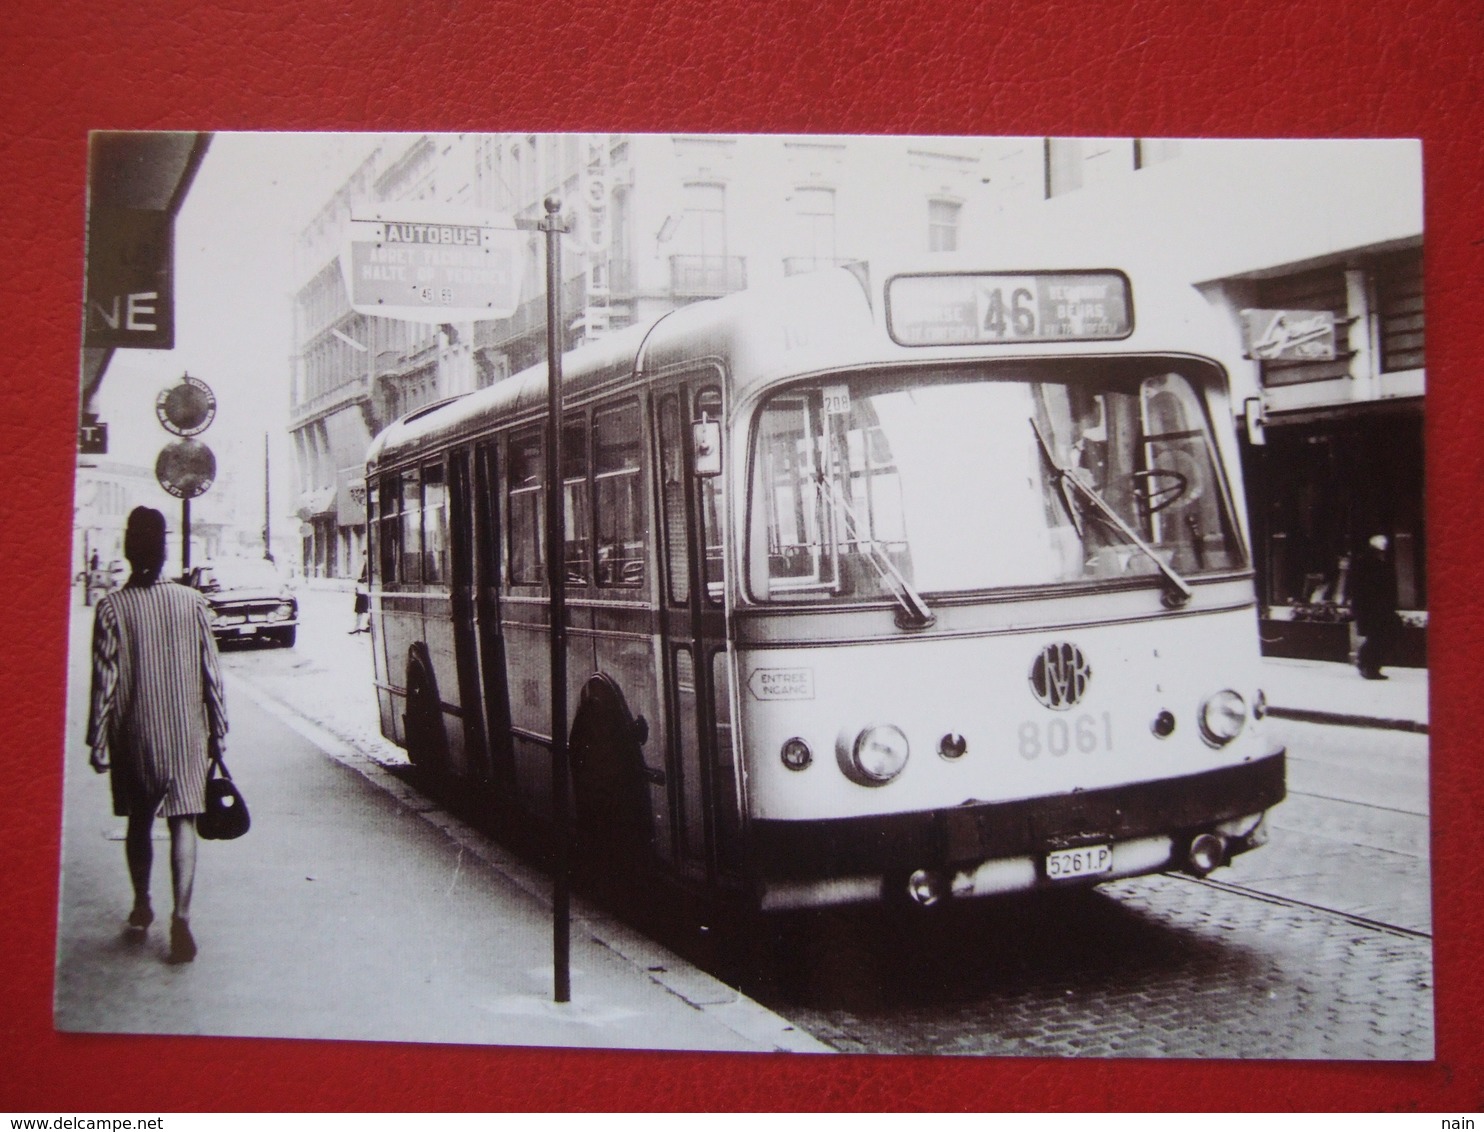 BELGIQUE - BRUXELLES - PHOTO 14.5 X 10 - TRAM - TRAMWAY - BUS -  LIGNE  46  - ANNNEE 60... - Public Transport (surface)